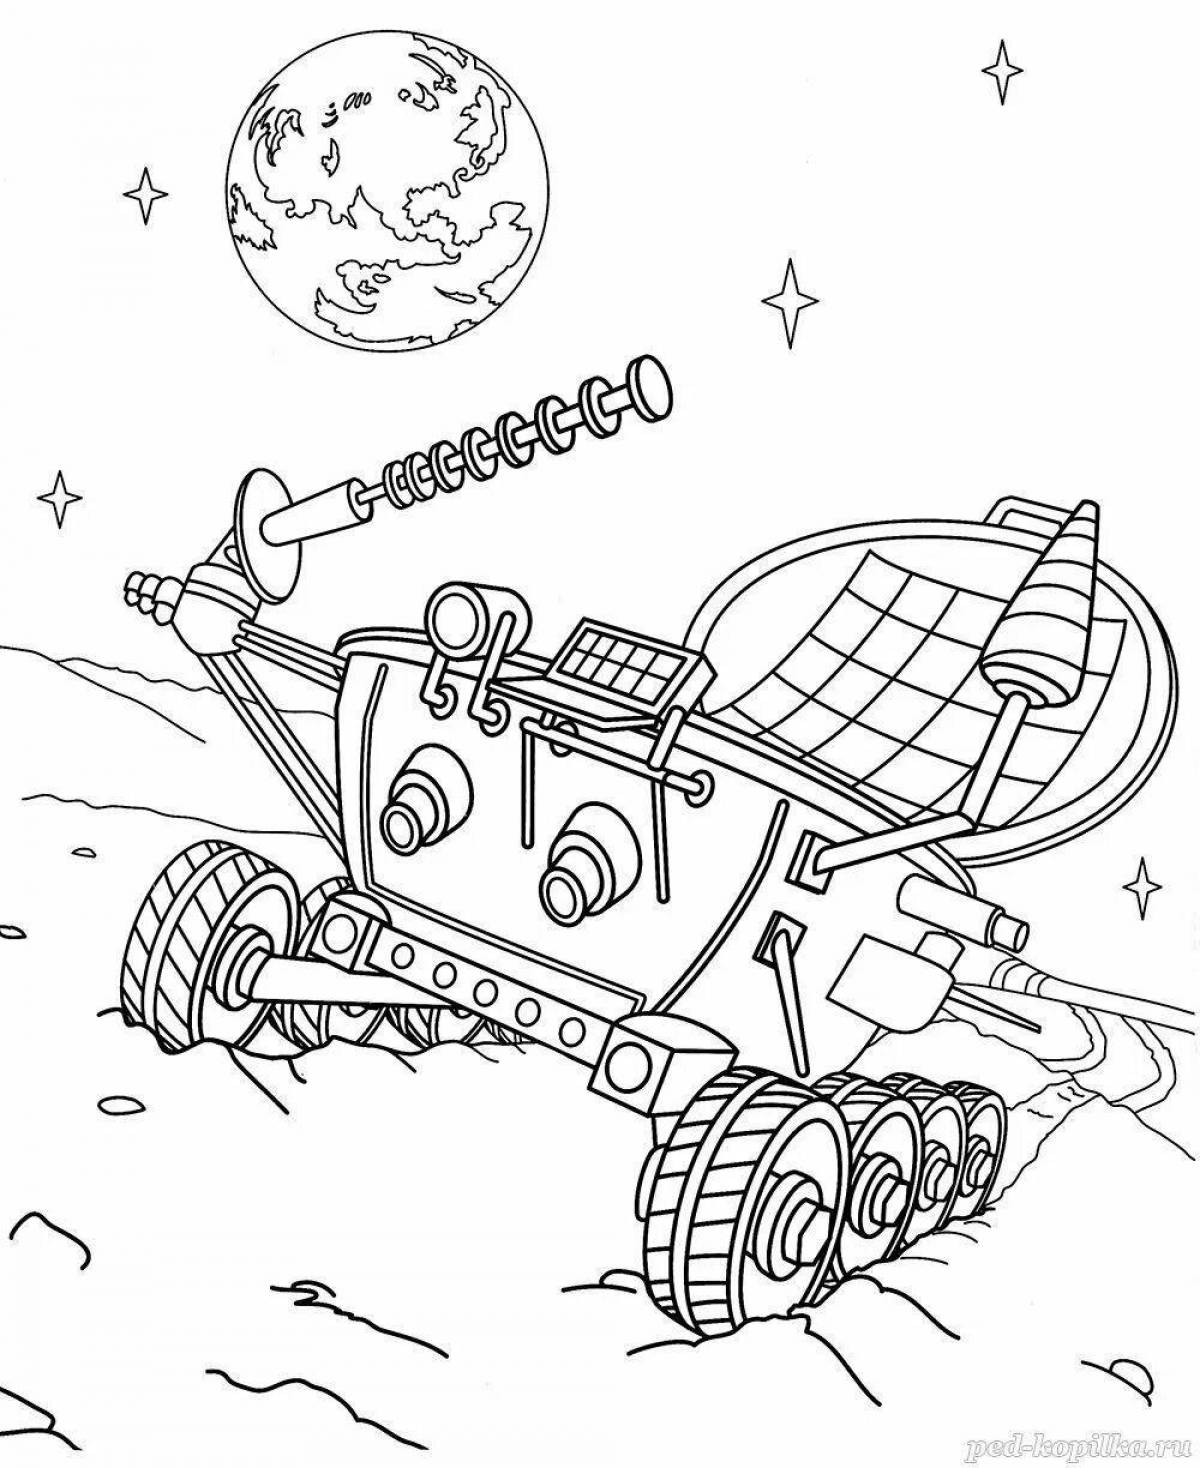 Lunar rover #1